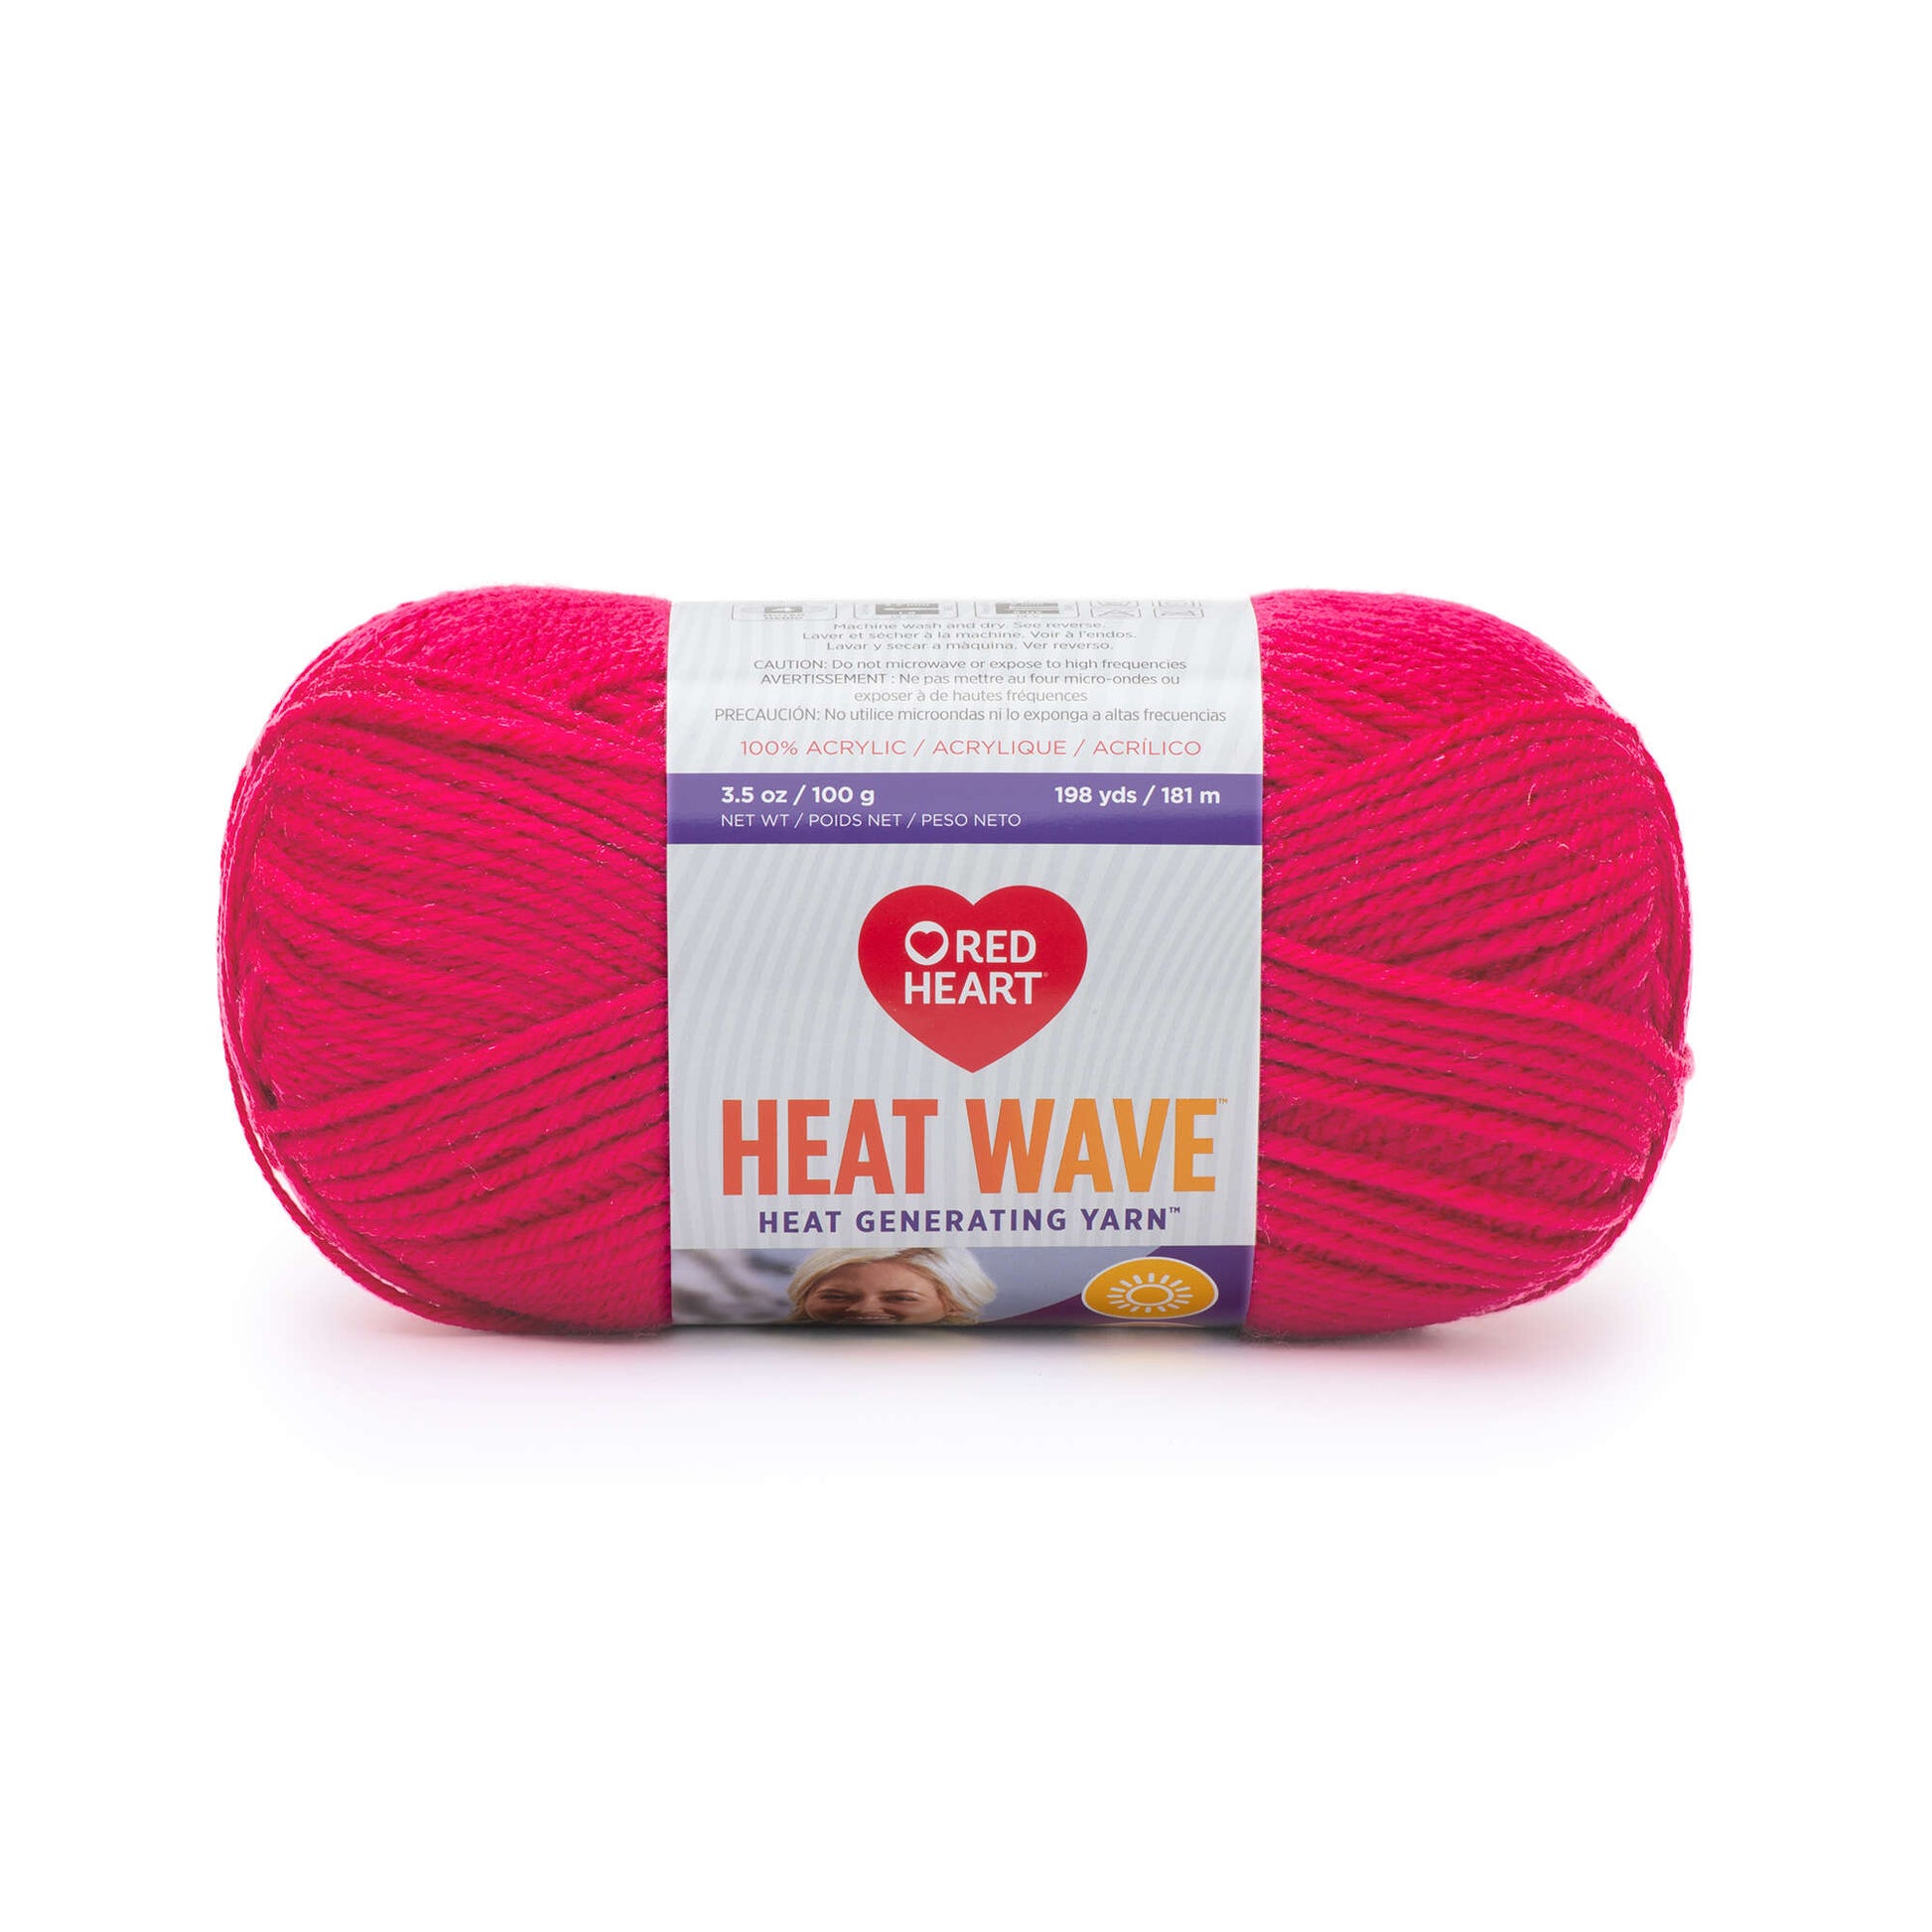 Red Heart Heat Wave Yarn - Clearance shades Bikini